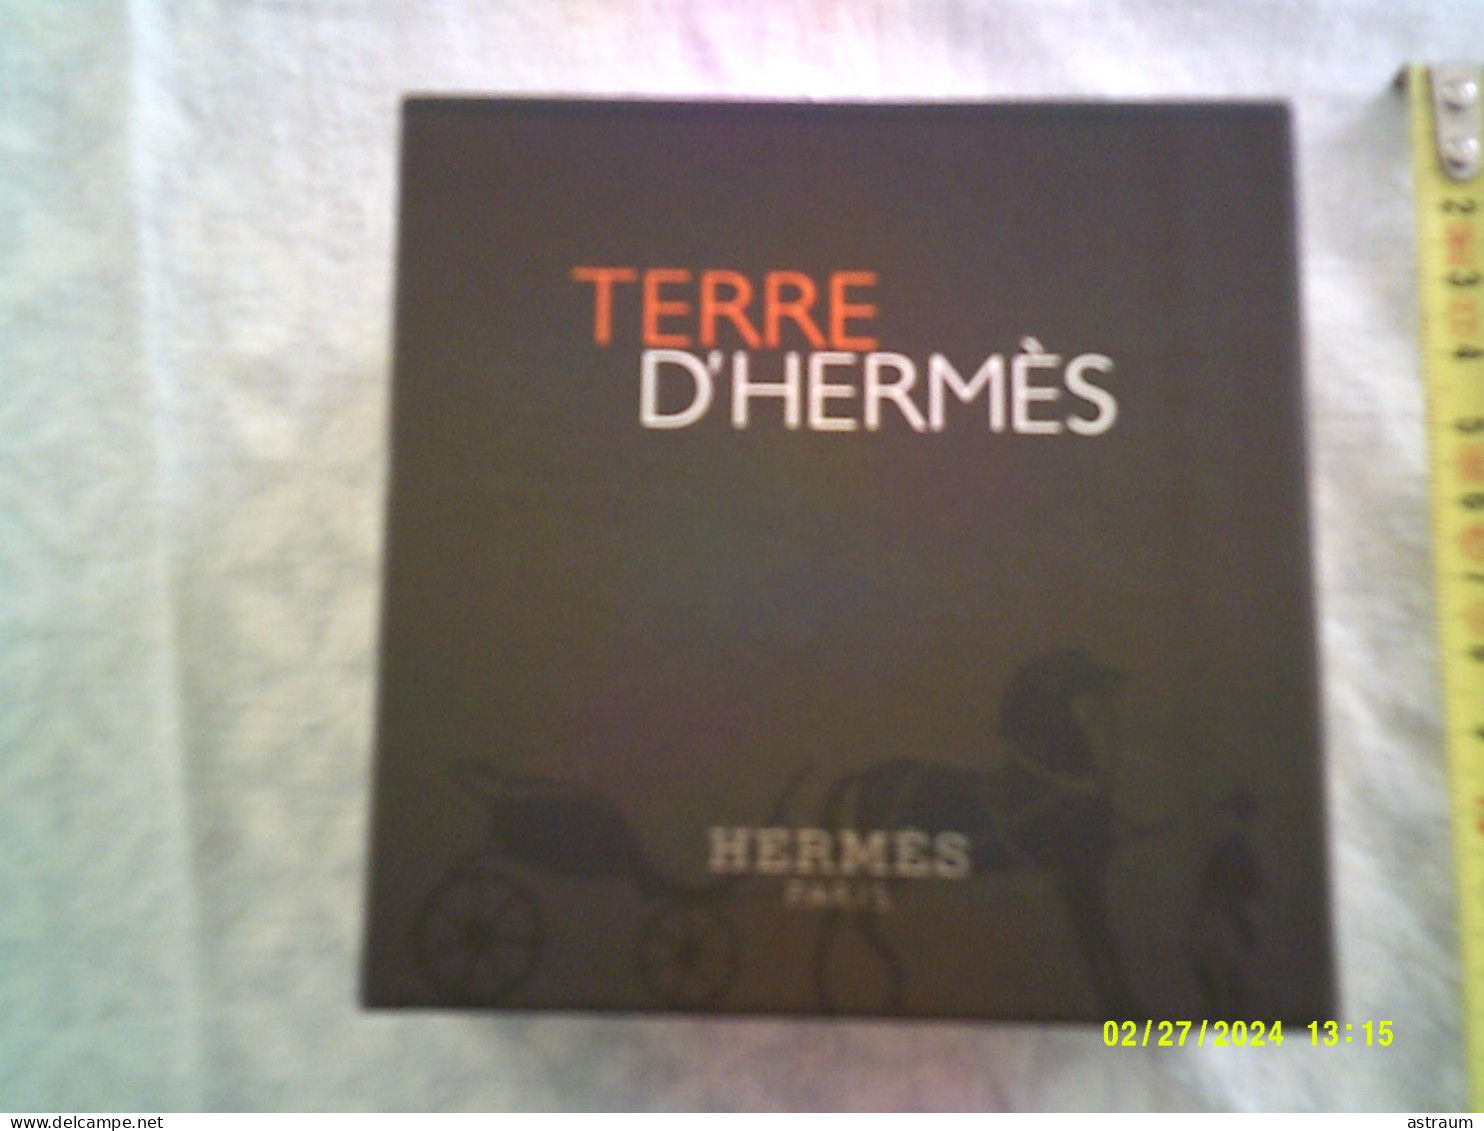 Coffret 2 Miniature Vaporisateur Parfum Hermes - EDT - Terre D'hermes Plein 12,5ml + Tube Emulsion Apres Rasage 15ml - Miniaturas Hombre (en Caja)